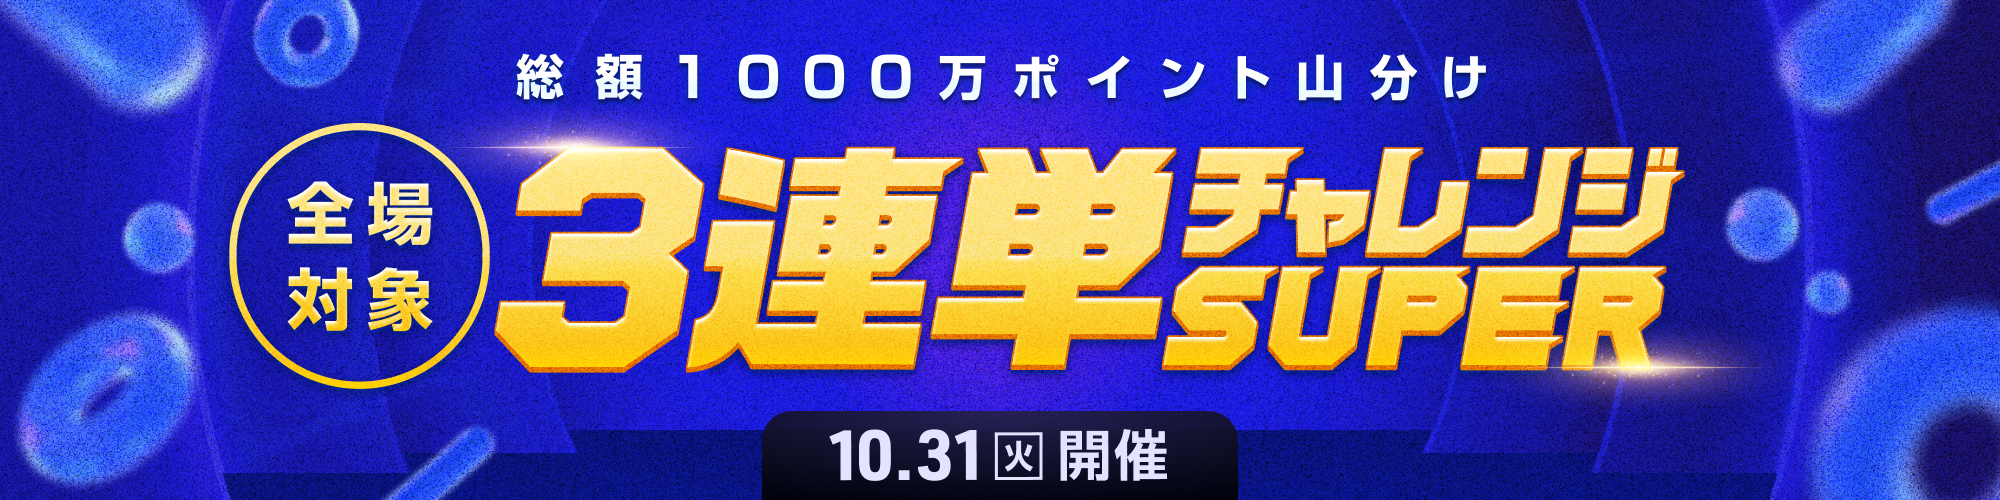 【1000万山分け!!】全場対象3連単チャレンジSUPER - WINTICKET（ウィンチケット競輪・オートレース）